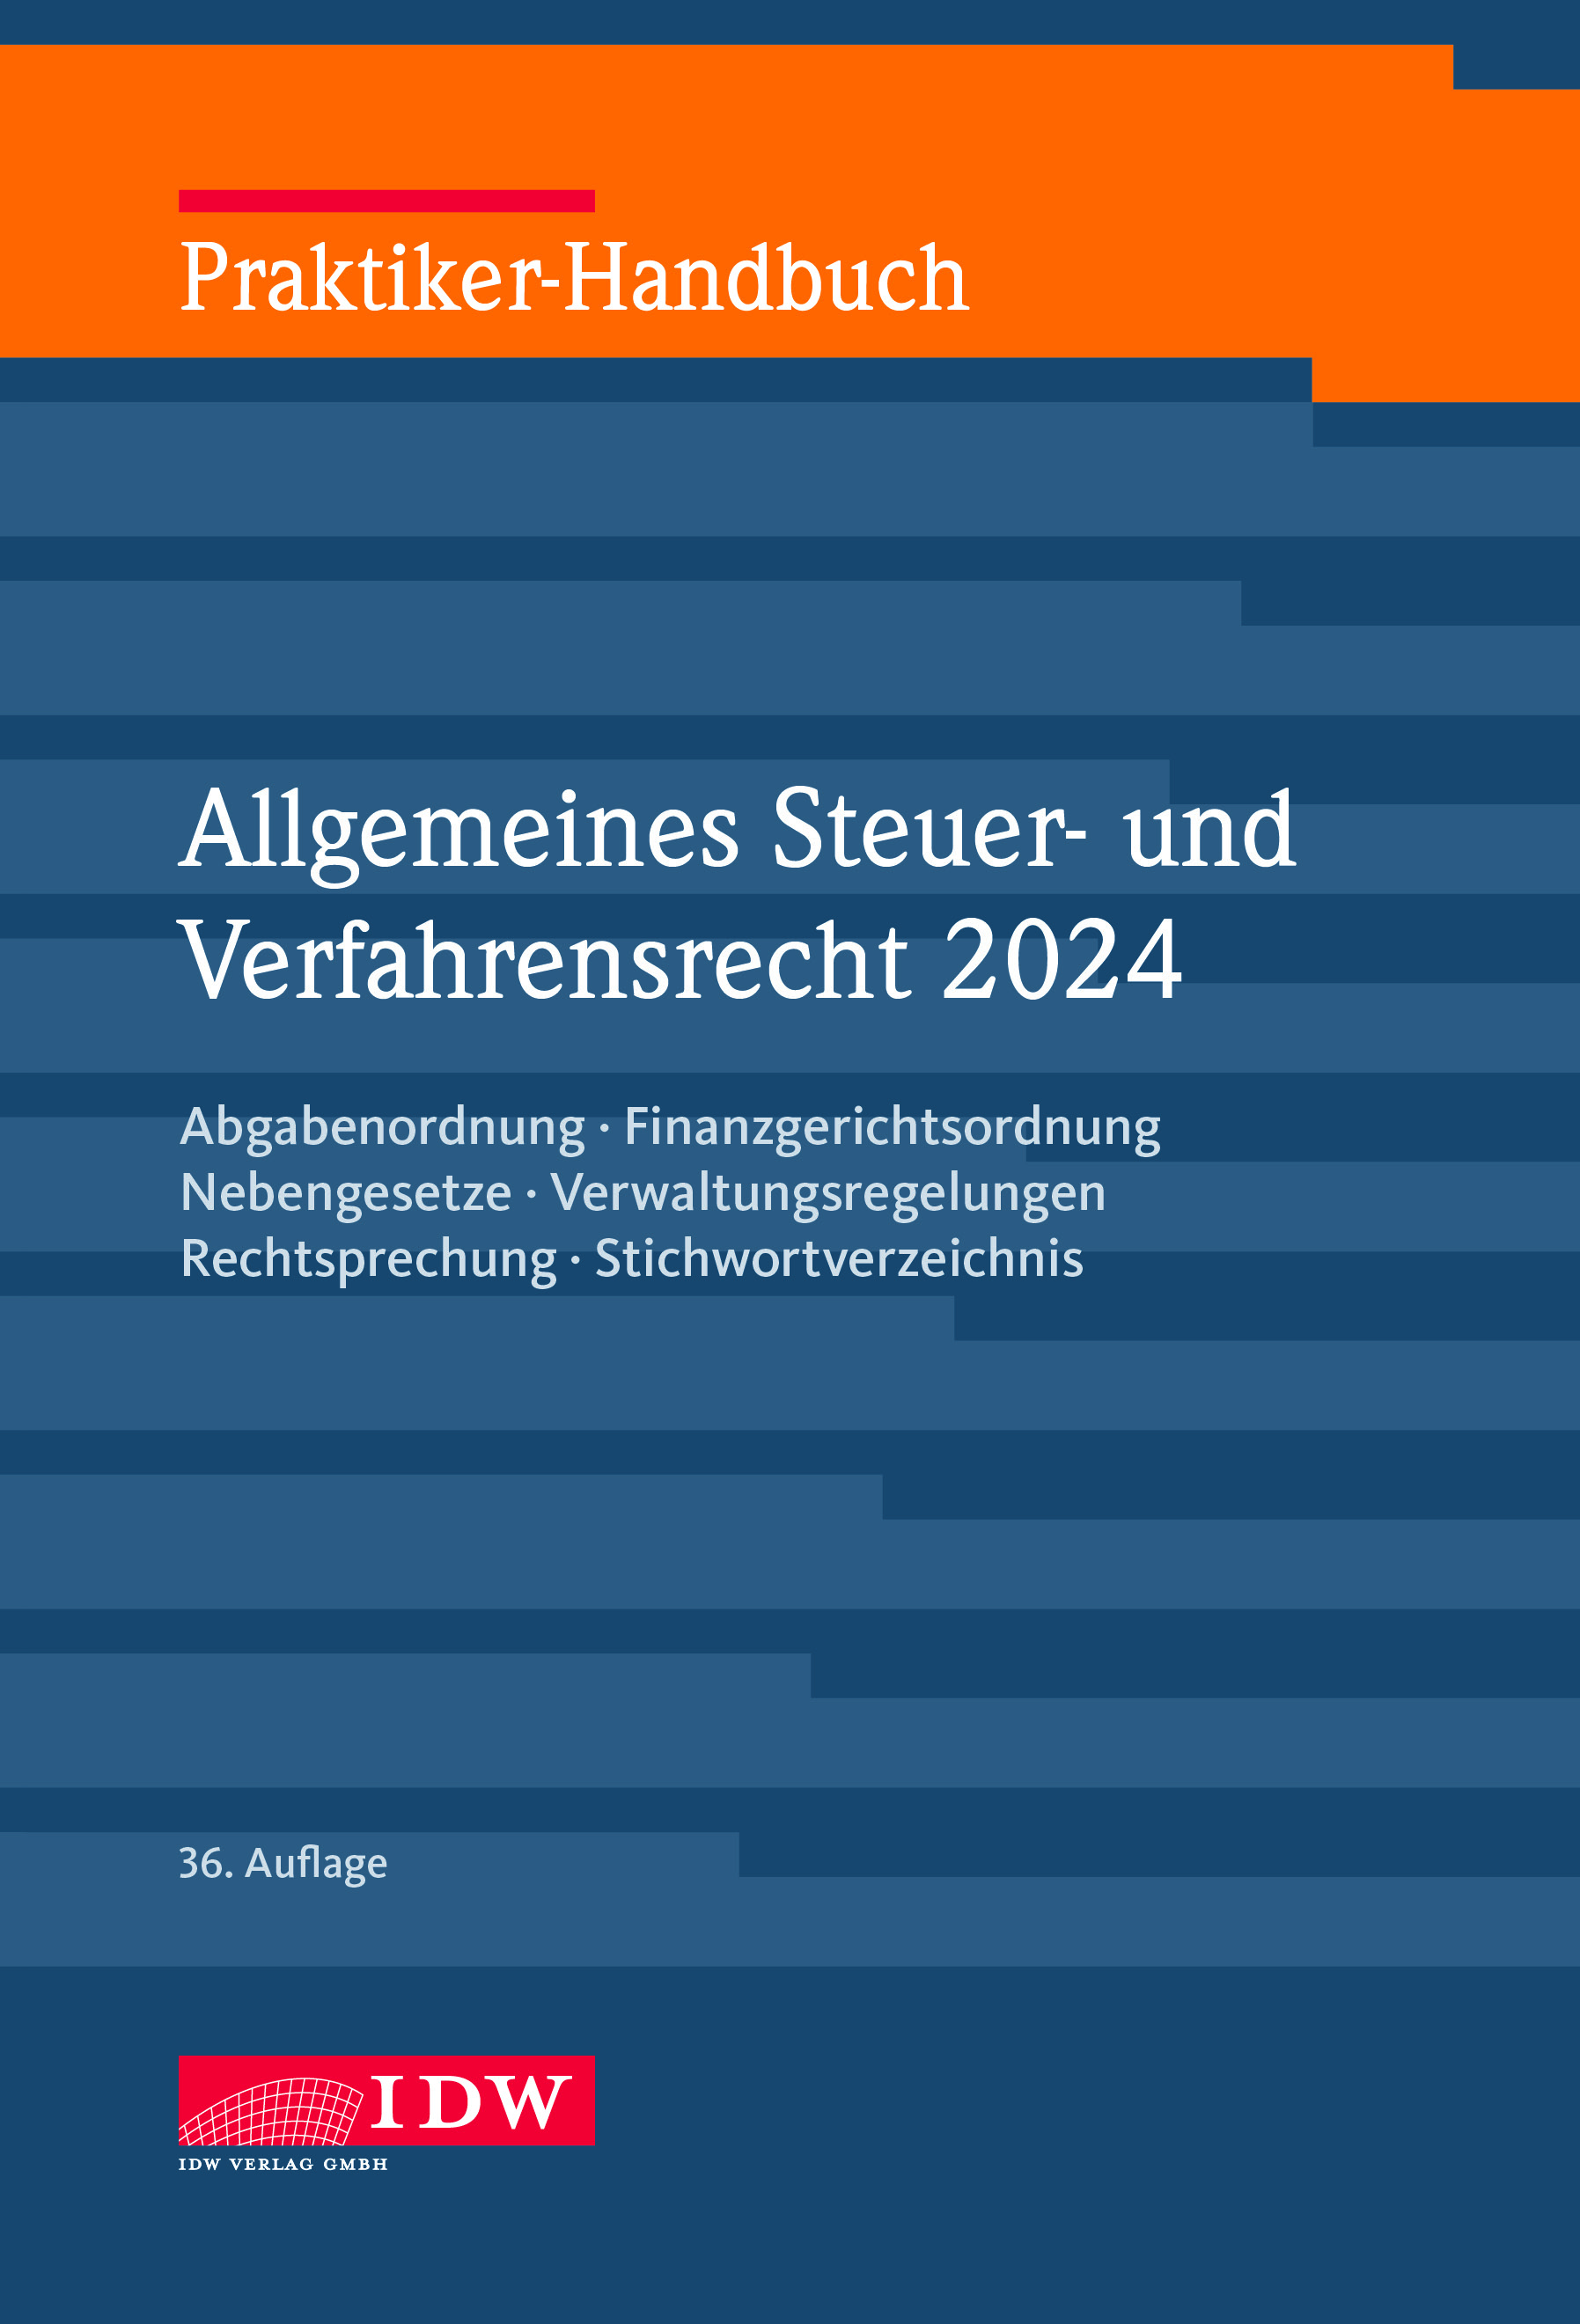 Praktiker-Handbuch Allgemeines Steuer- und Verfahrensrecht 2024